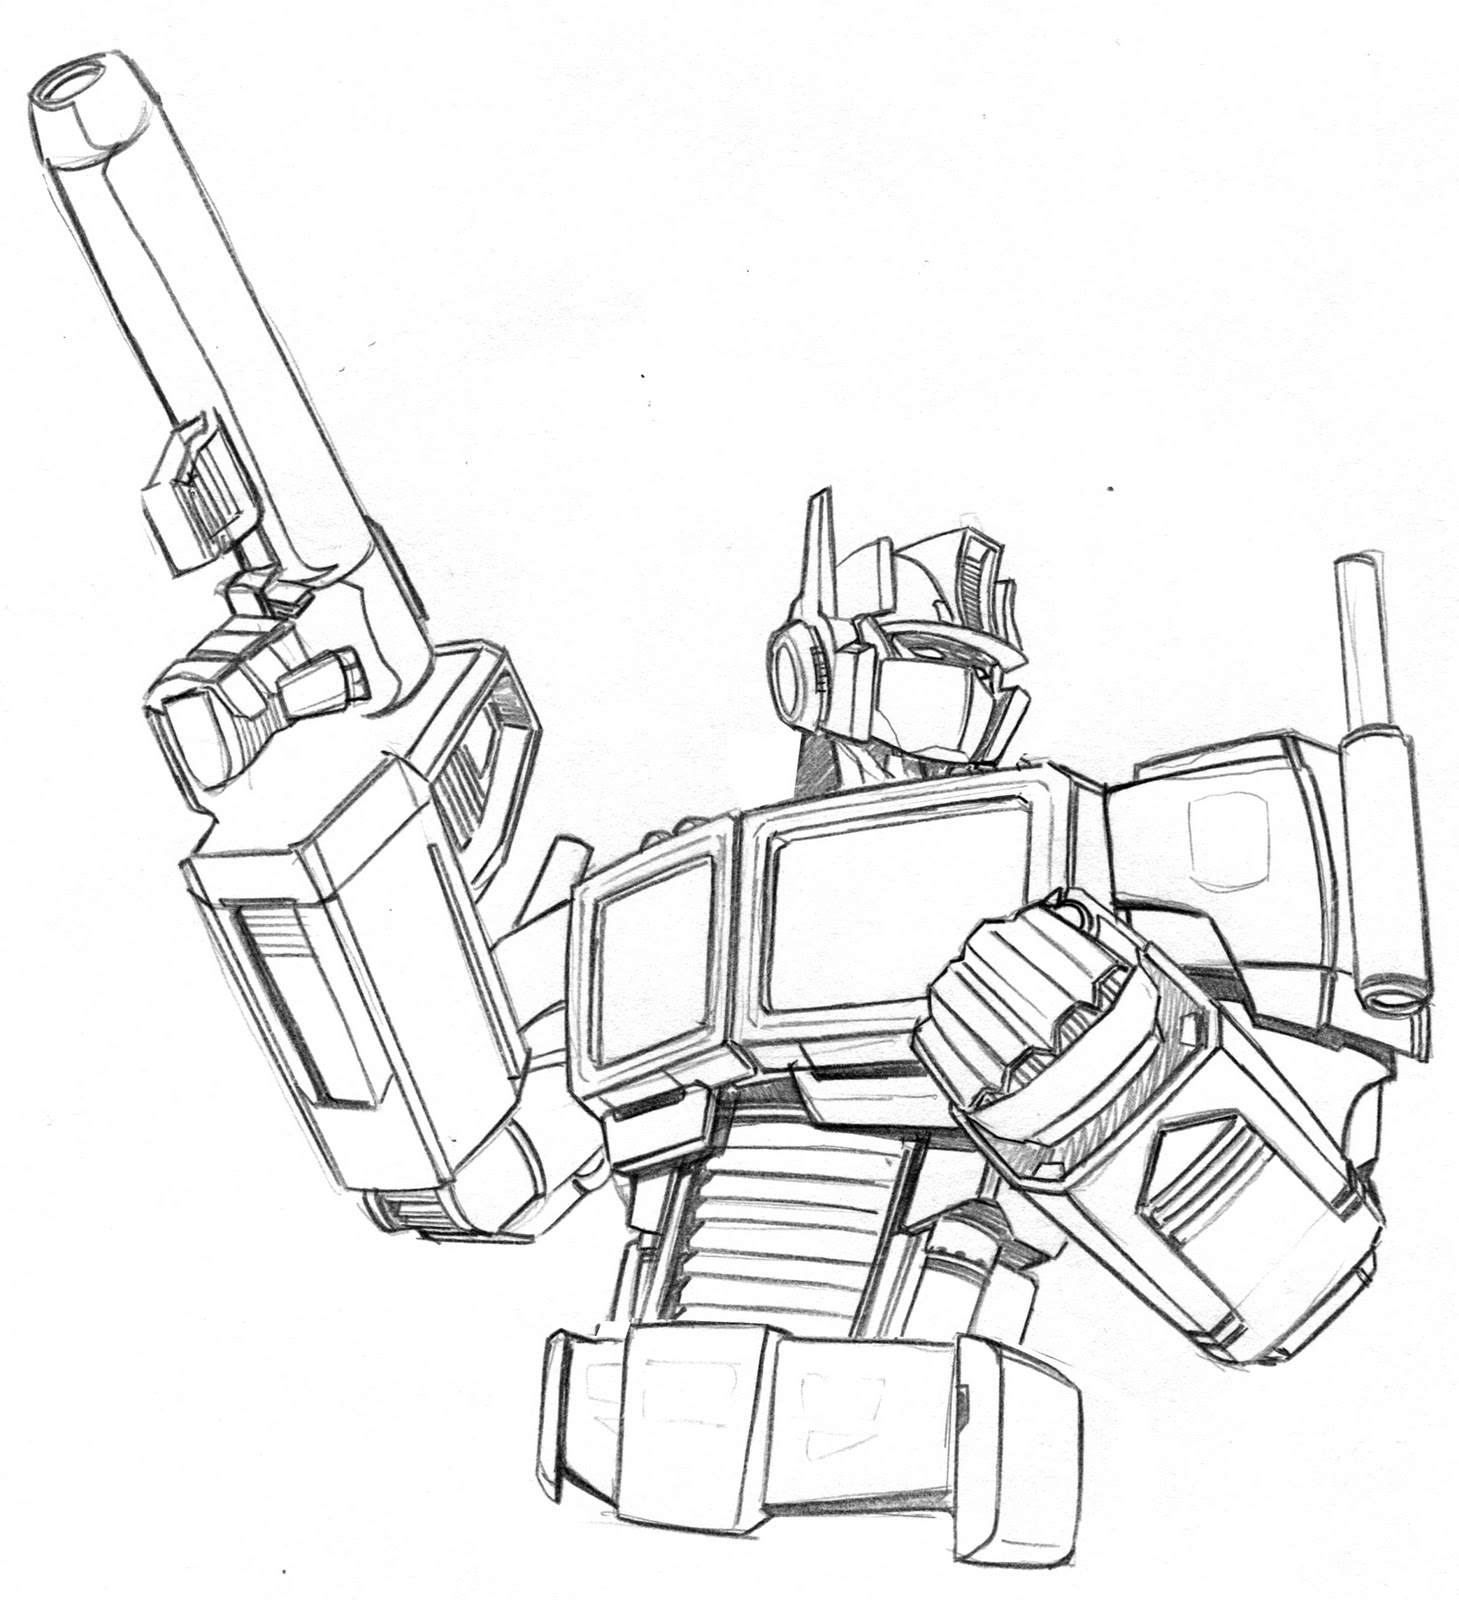 Transformers Optimus Prime Drawing at GetDrawings Free download